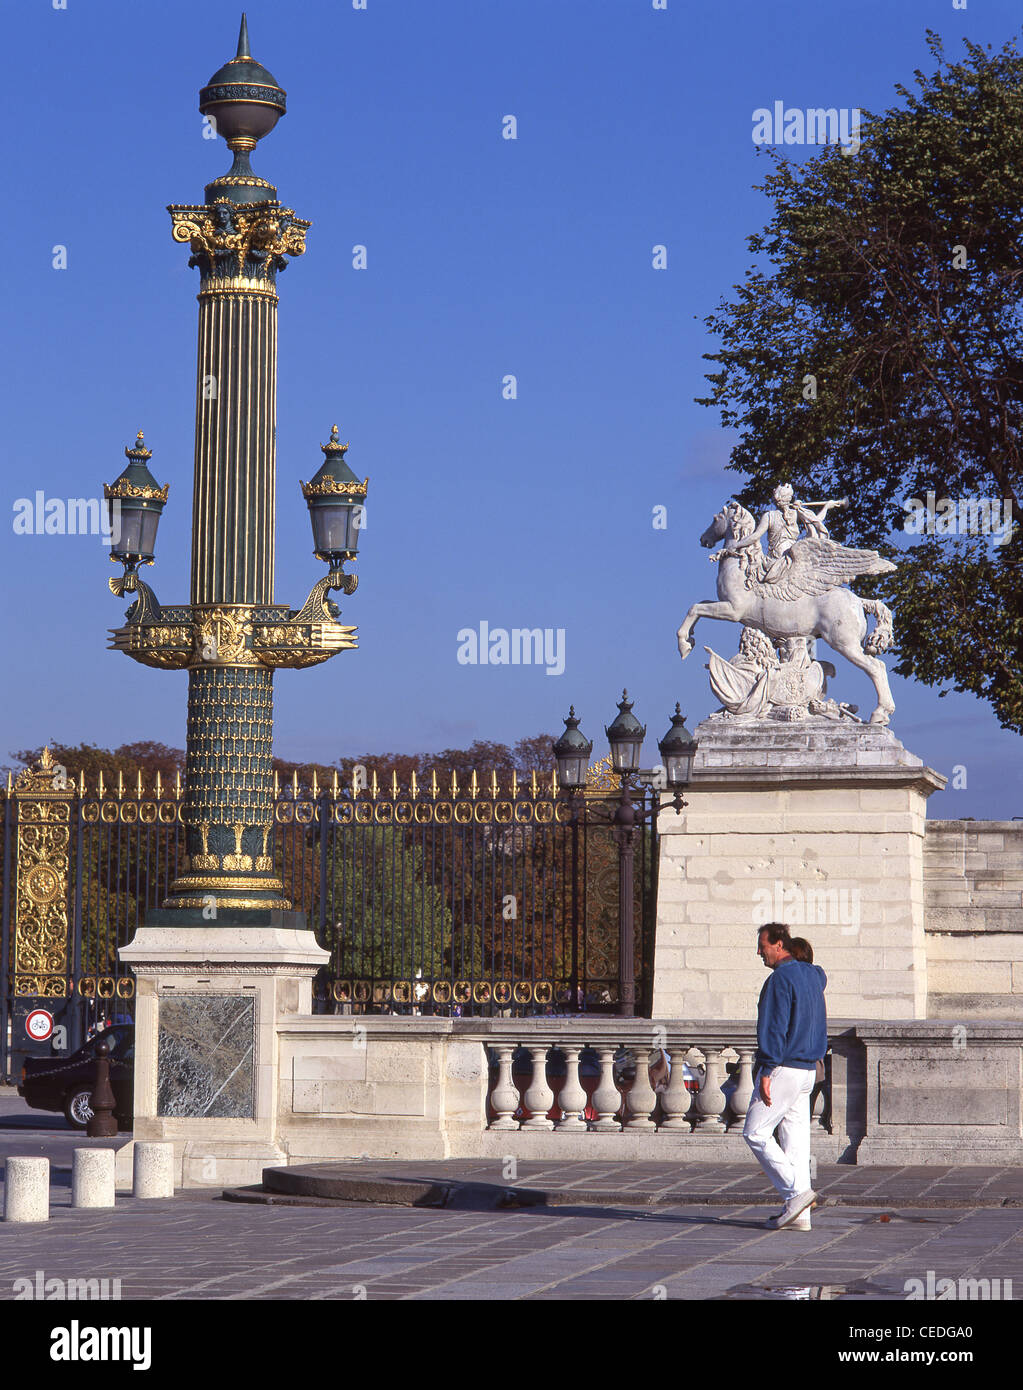 Entrance to The Tuileries Gardens, Paris, Île-de-France, France Stock Photo